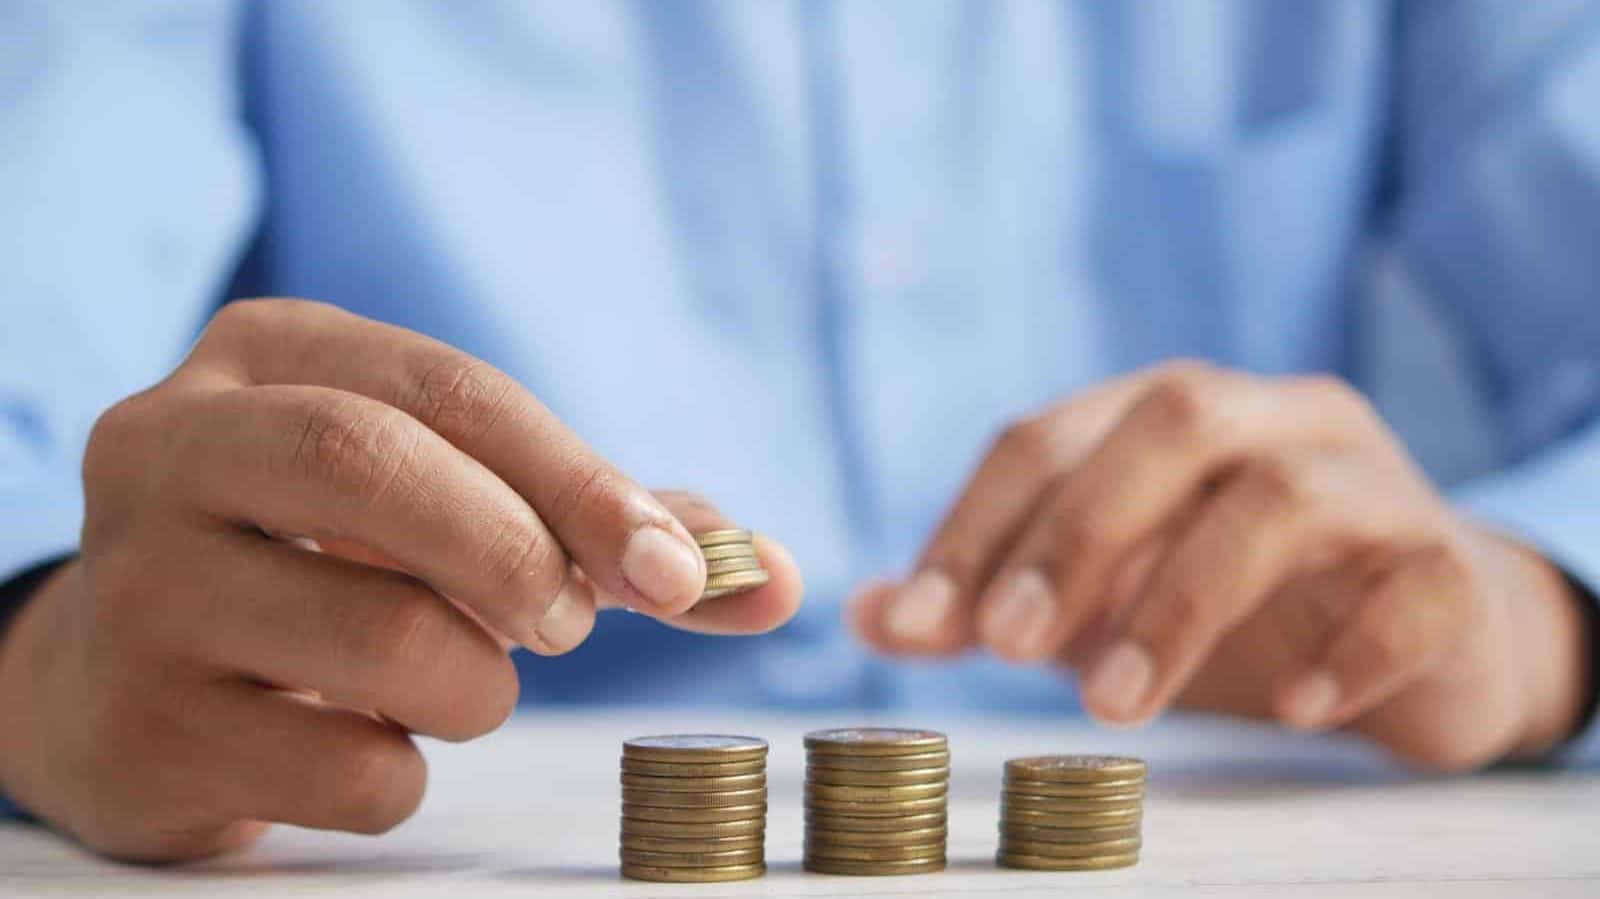 en person staplar mynt på ett bord som symbol för att bygga bättre lånevillkor